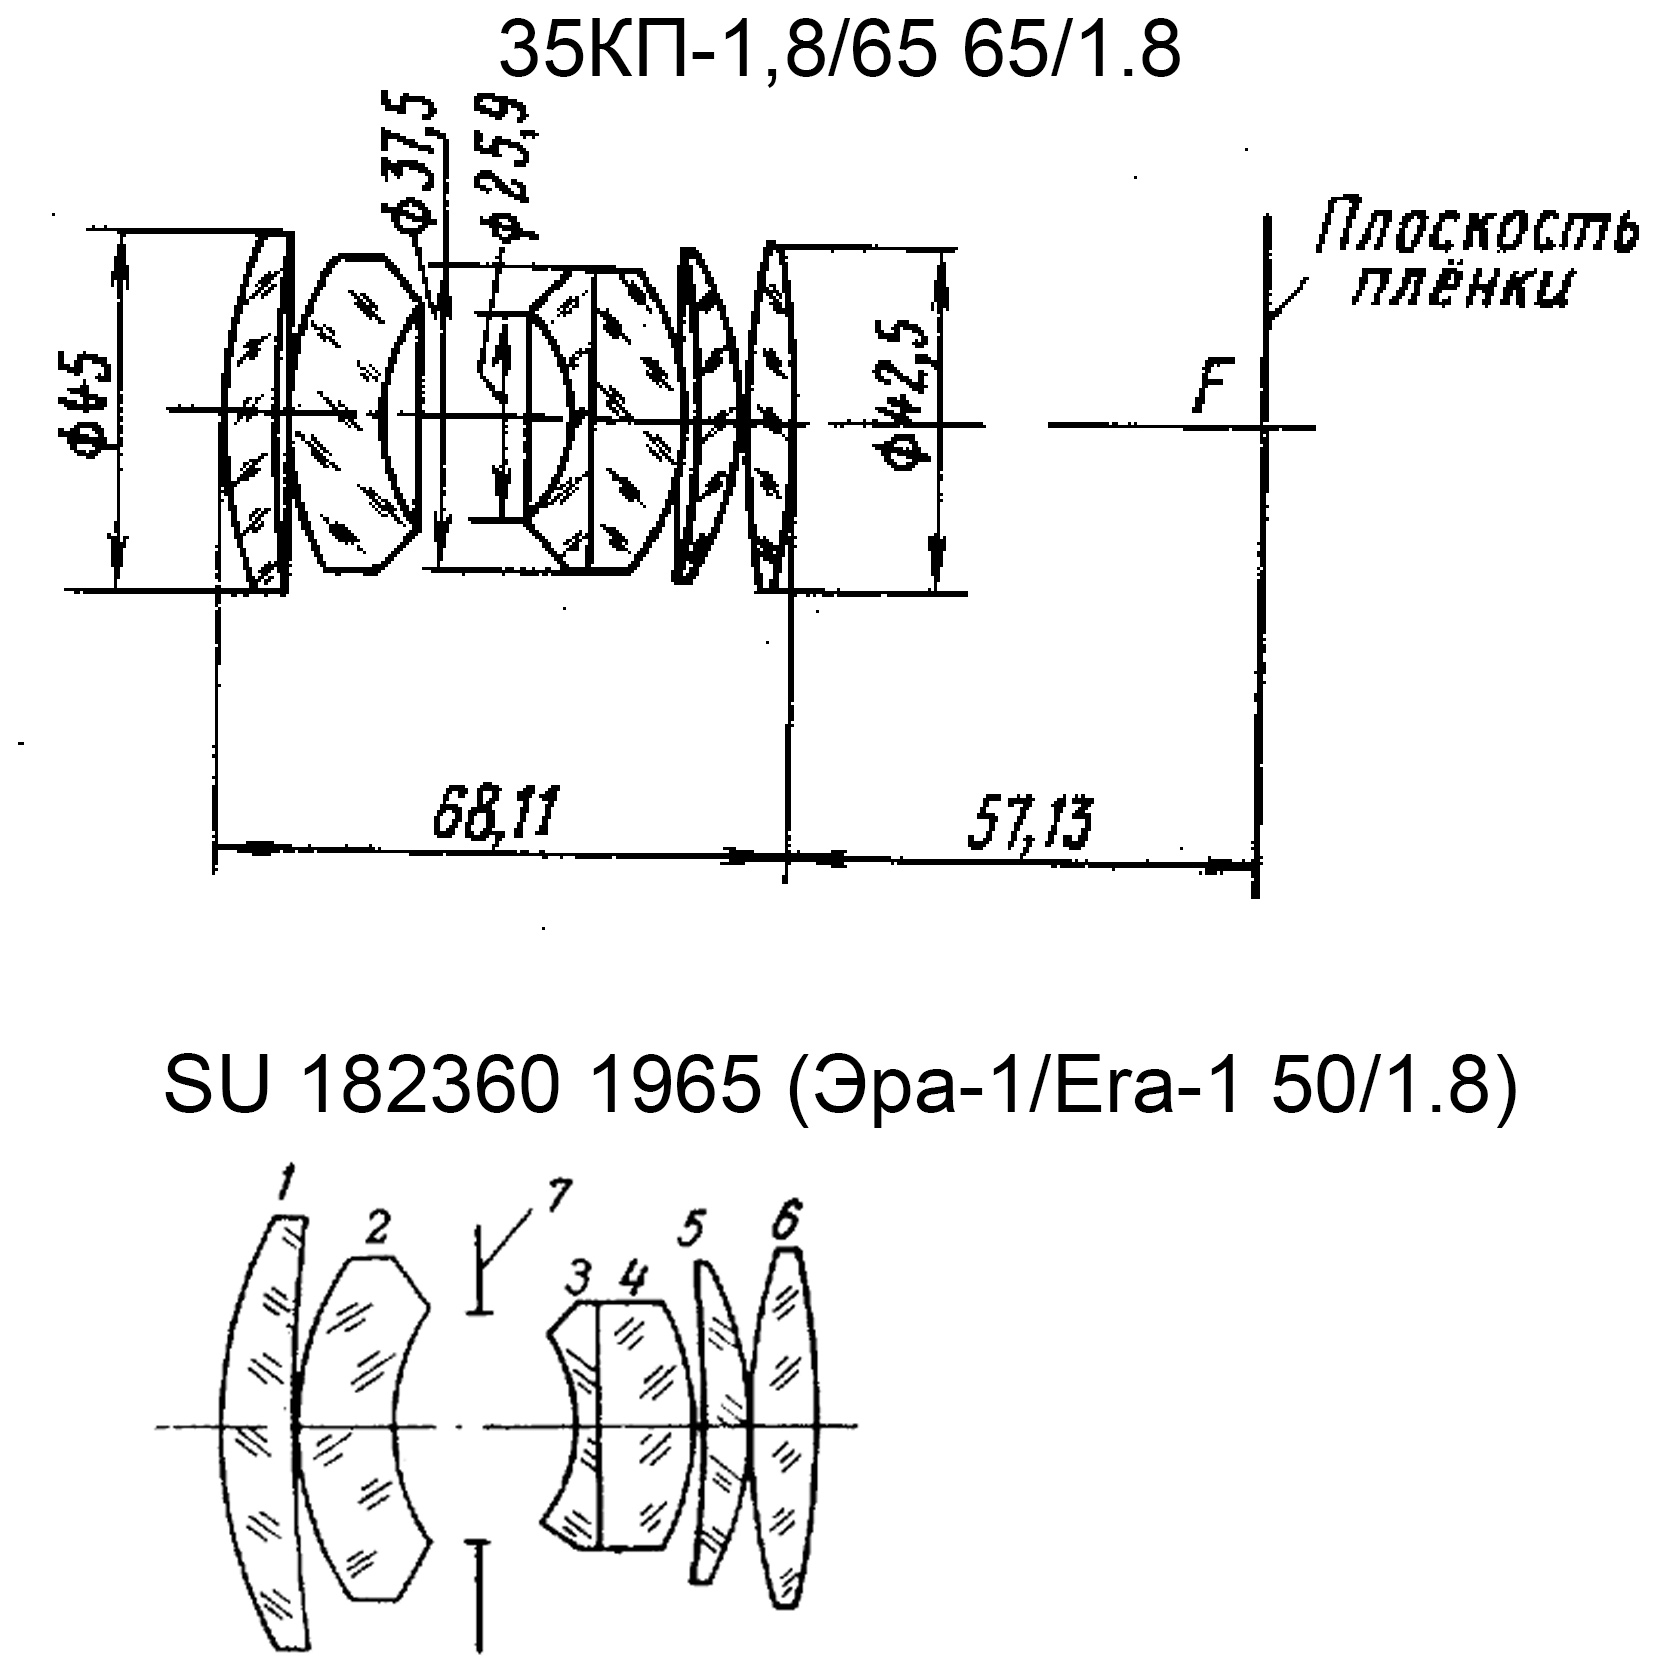 Comparación de dibujos de esquemas ópticos de lentes 35KP-1,8 / 65 (del catálogo Yakovlev) y la lente de la patente SU 182350.